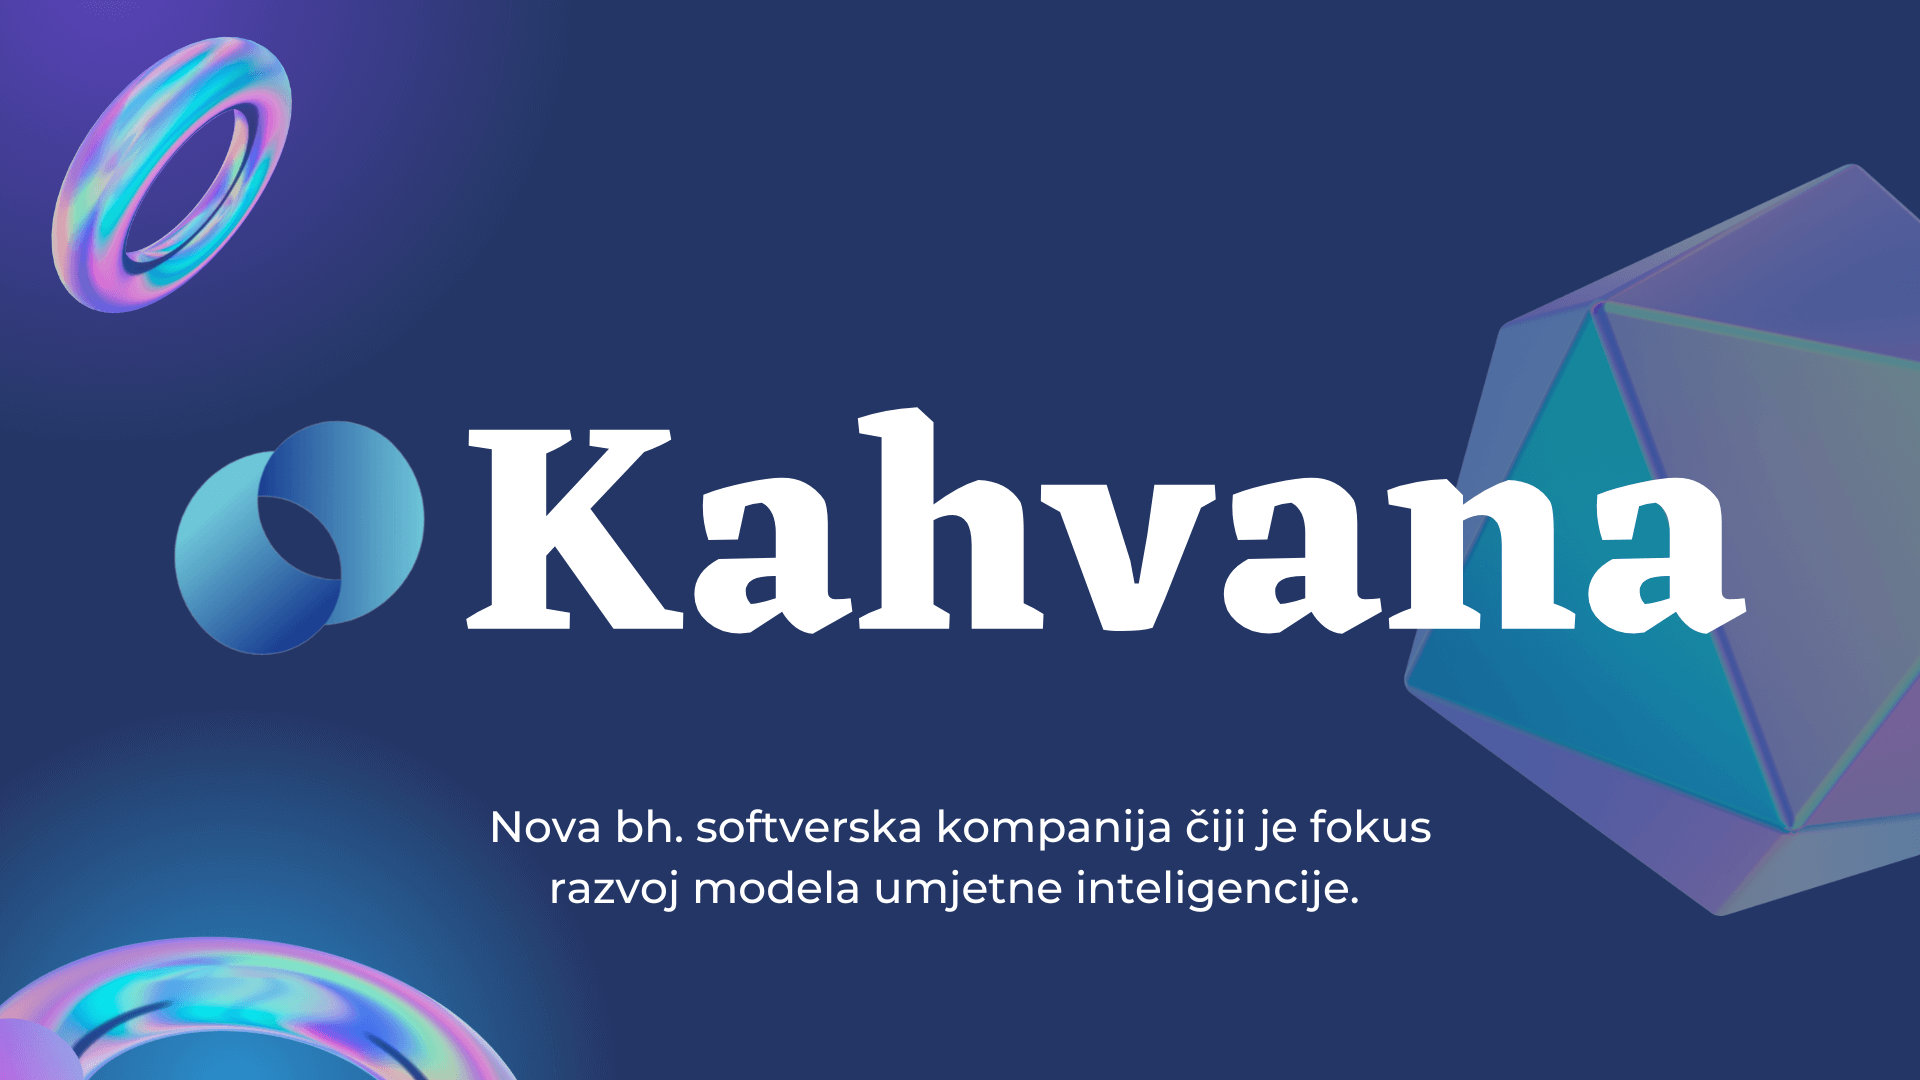 Mladi koji su ostali u BiH: Nova IT kompanija “Kahvana”